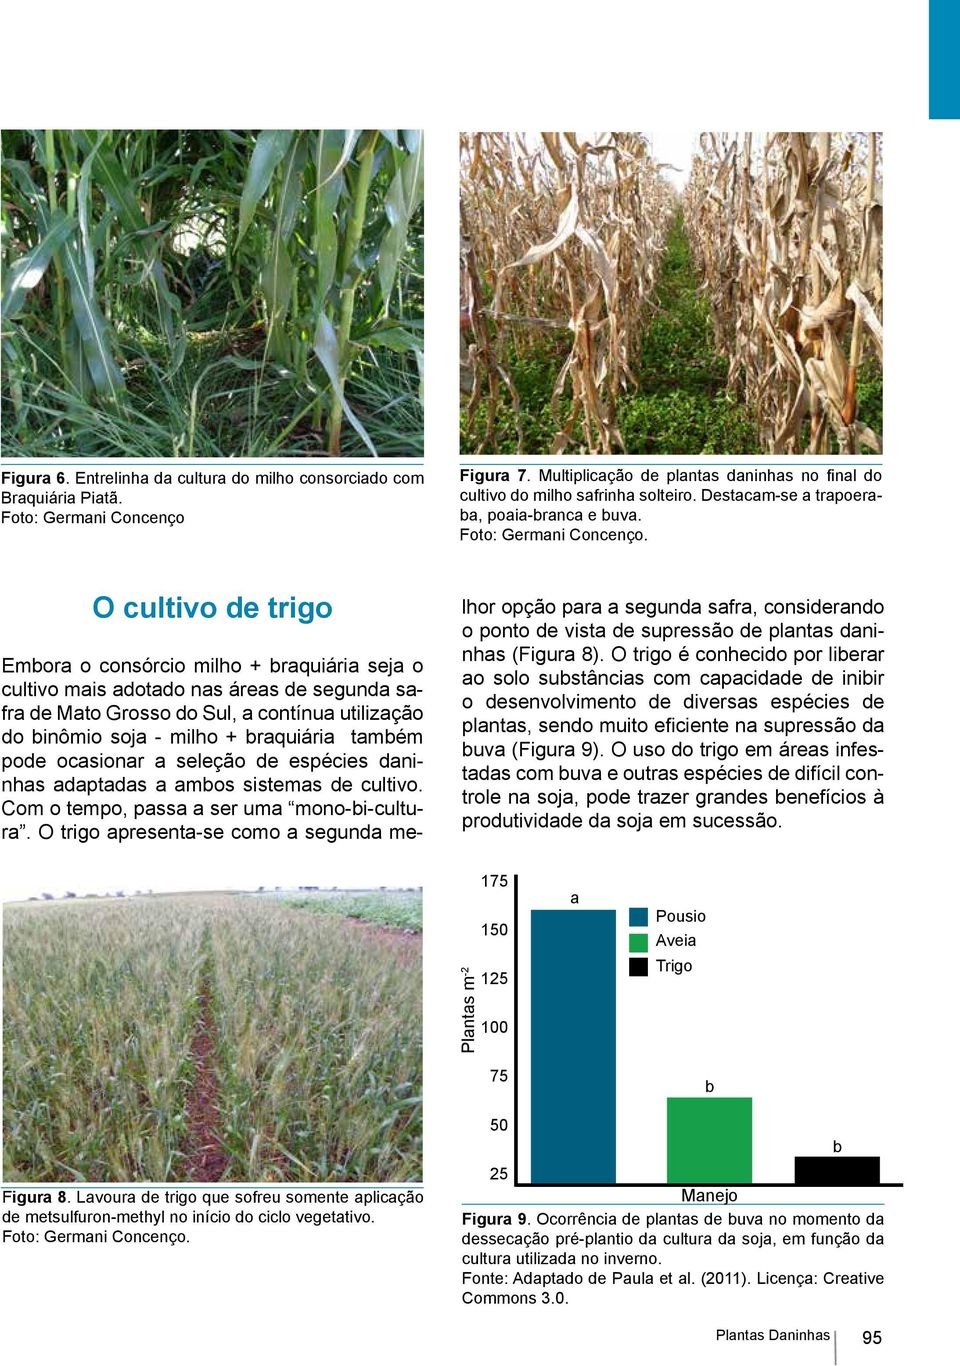 O cultivo de trigo Embora o consórcio milho + braquiária seja o cultivo mais adotado nas áreas de segunda safra de Mato Grosso do Sul, a contínua utilização do binômio soja milho + braquiária também